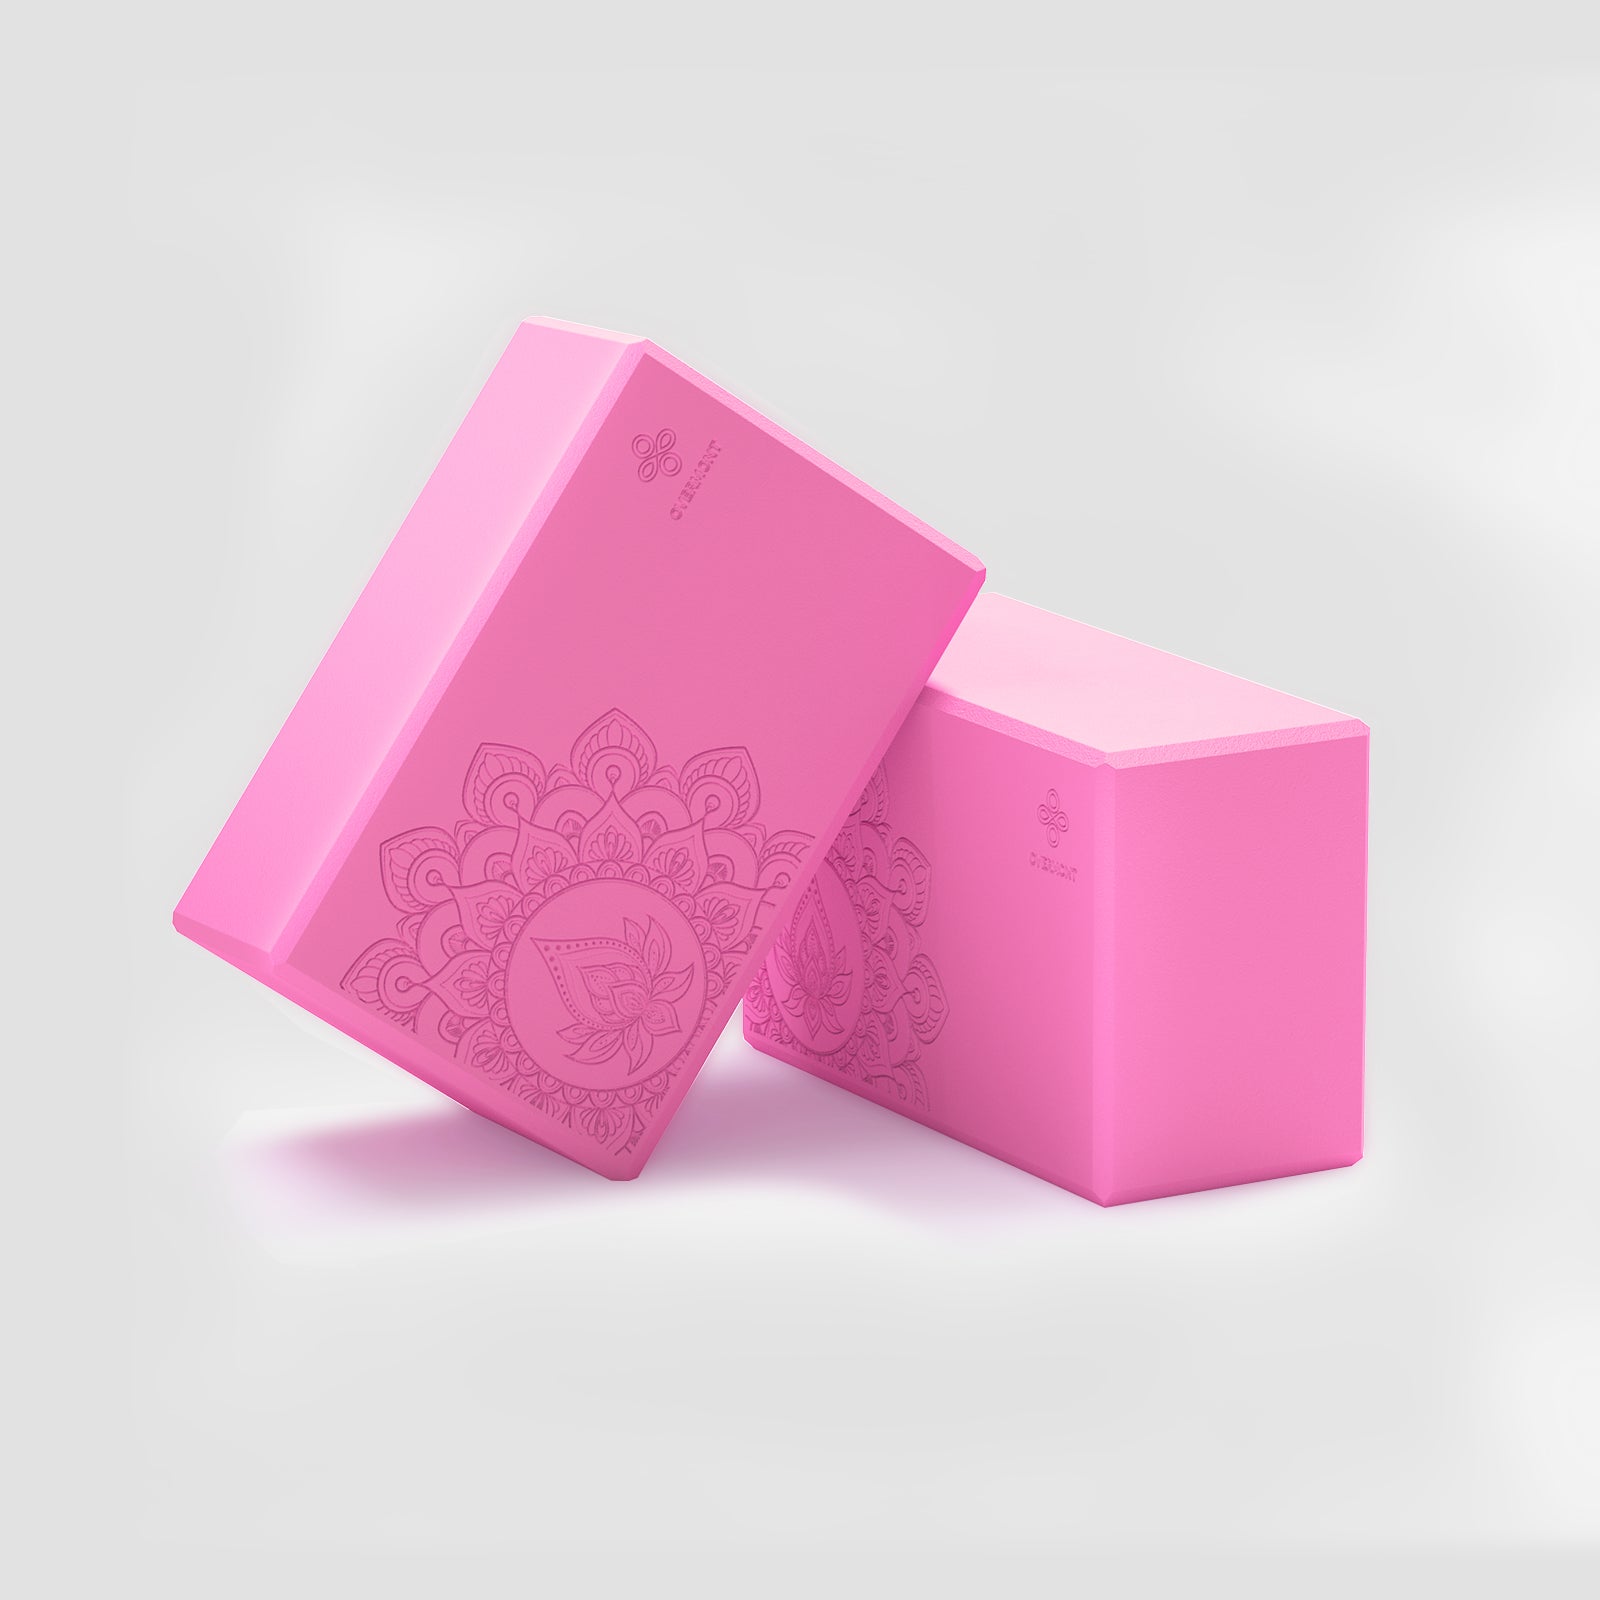 1 pair pink yoga blocks